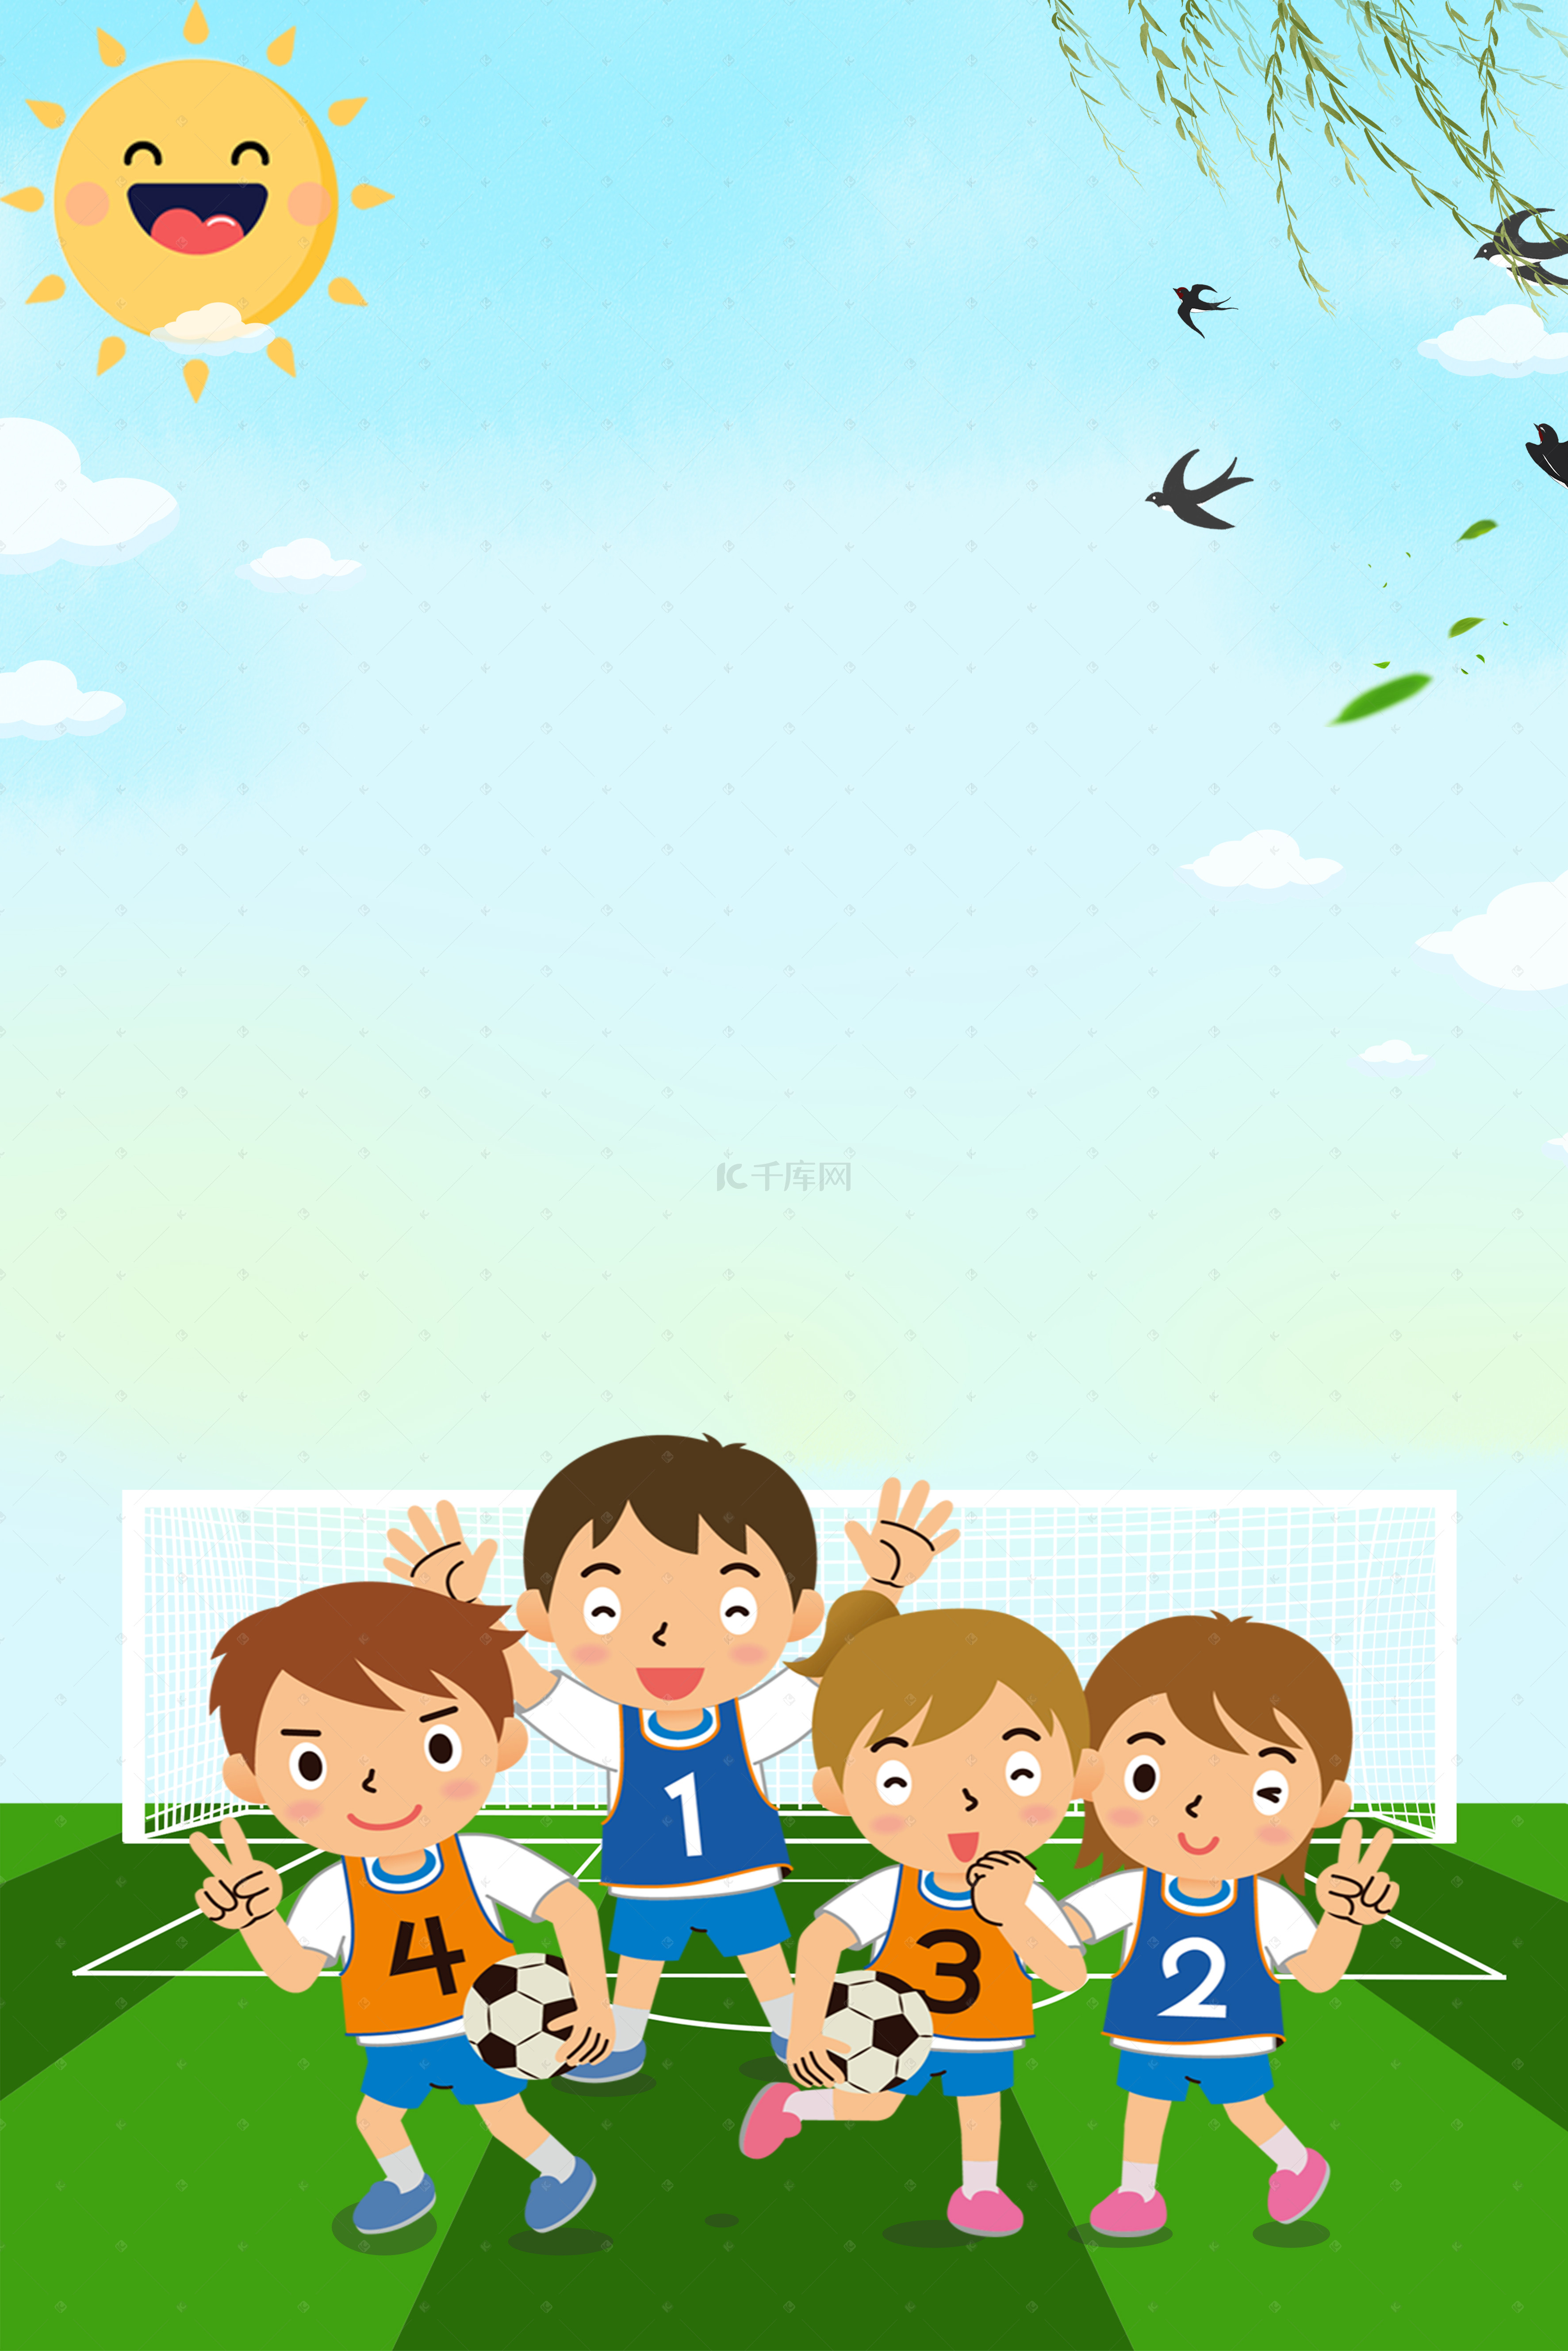 卡通足球背景图片_卡通足球少年世界杯背景图